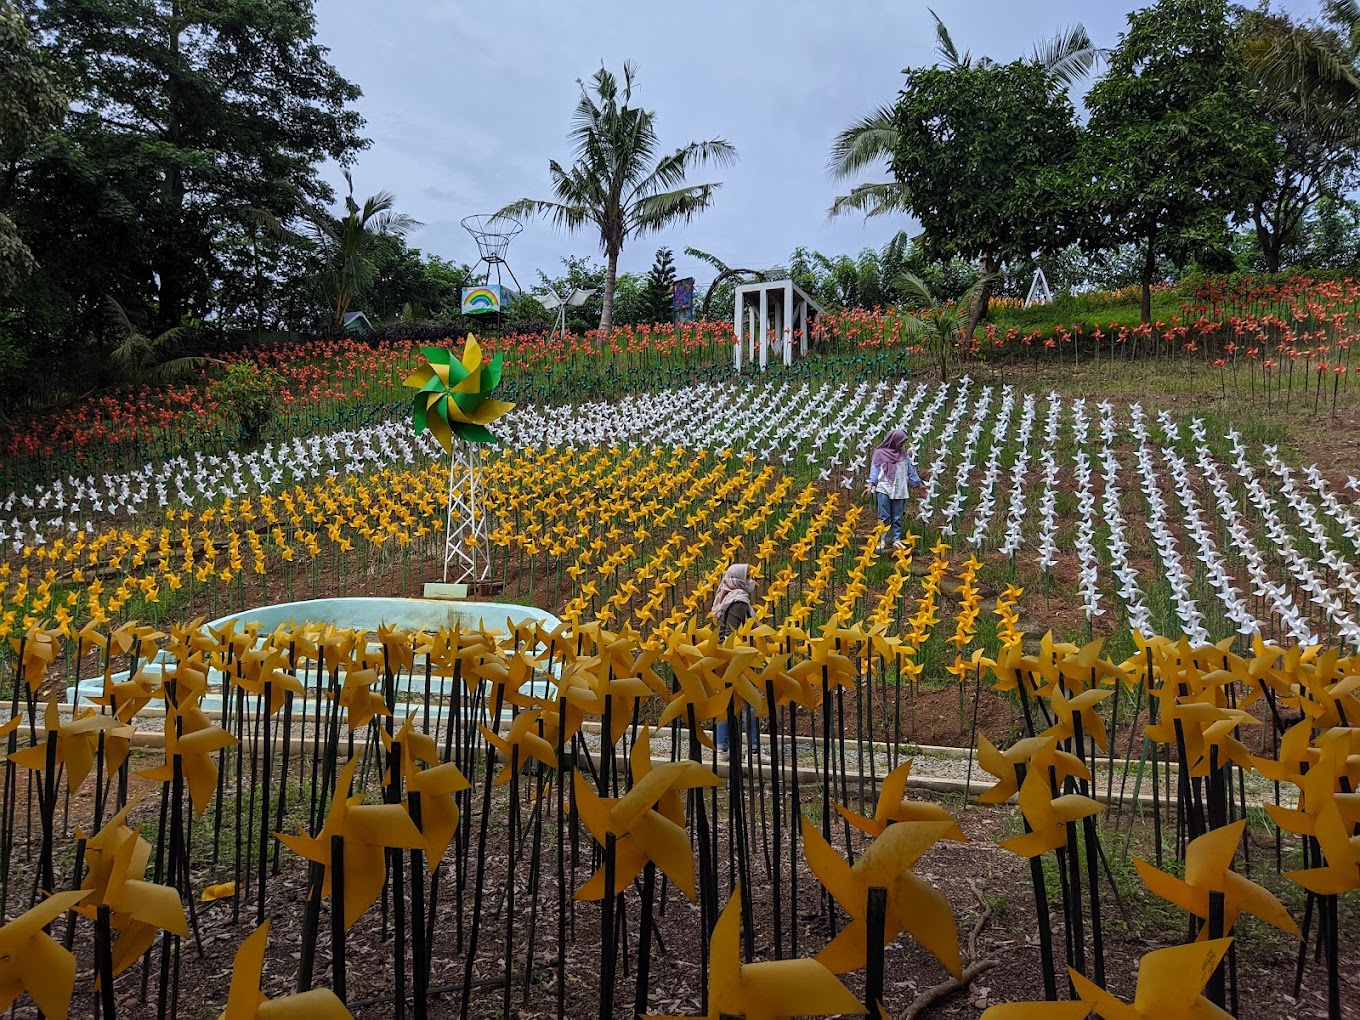 Tempat wisata Karawang New Marigold Garden